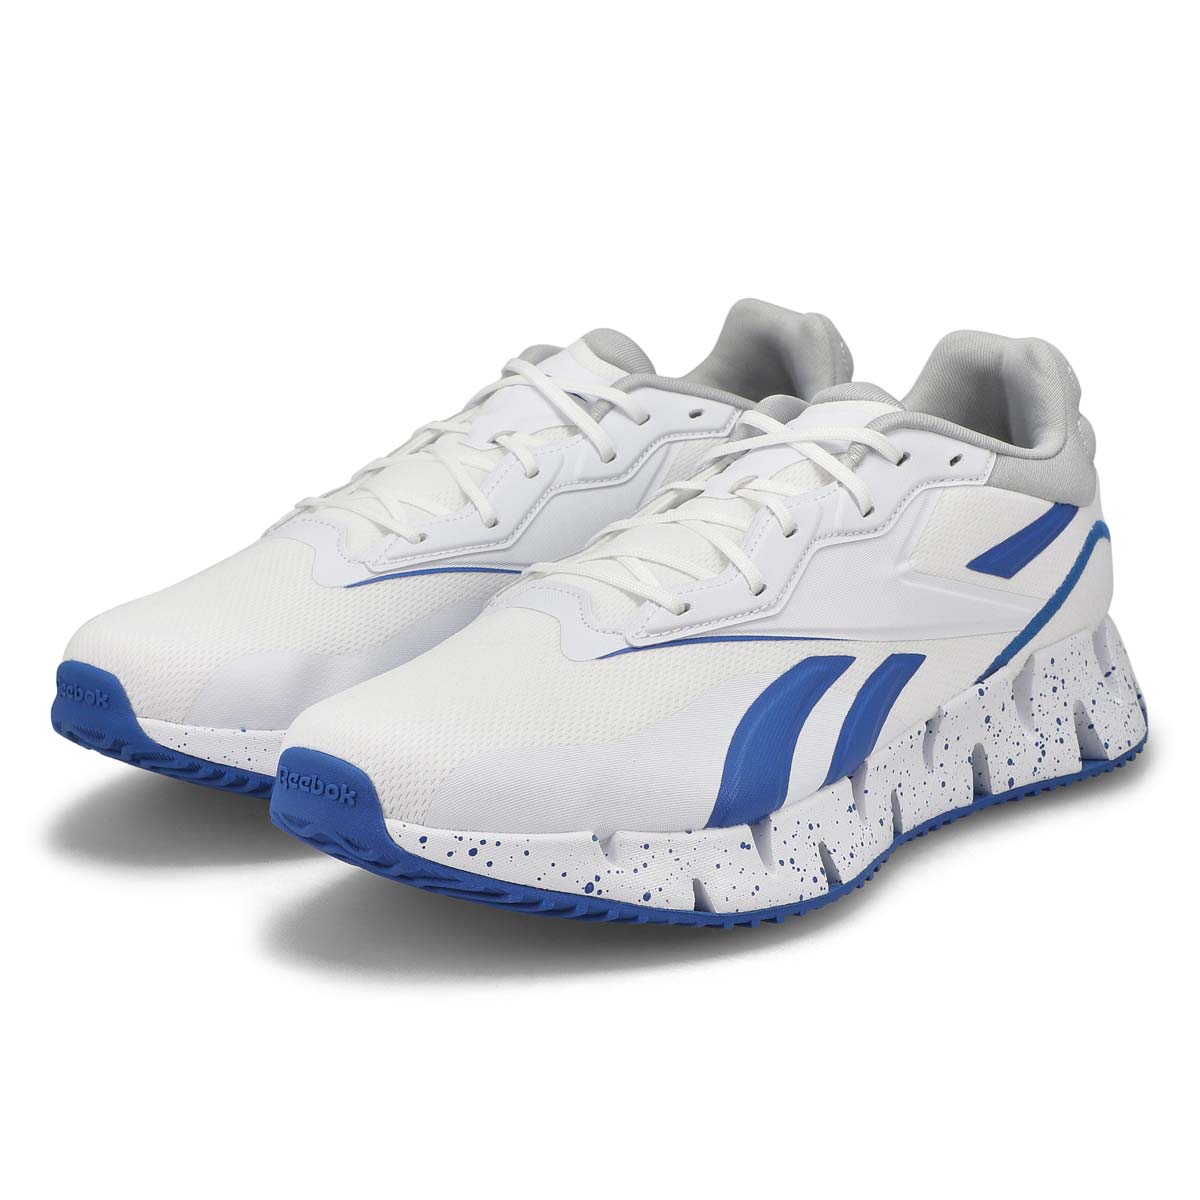 Men's Zig Dynamica 4 Sneaker -White/Blue/Grey